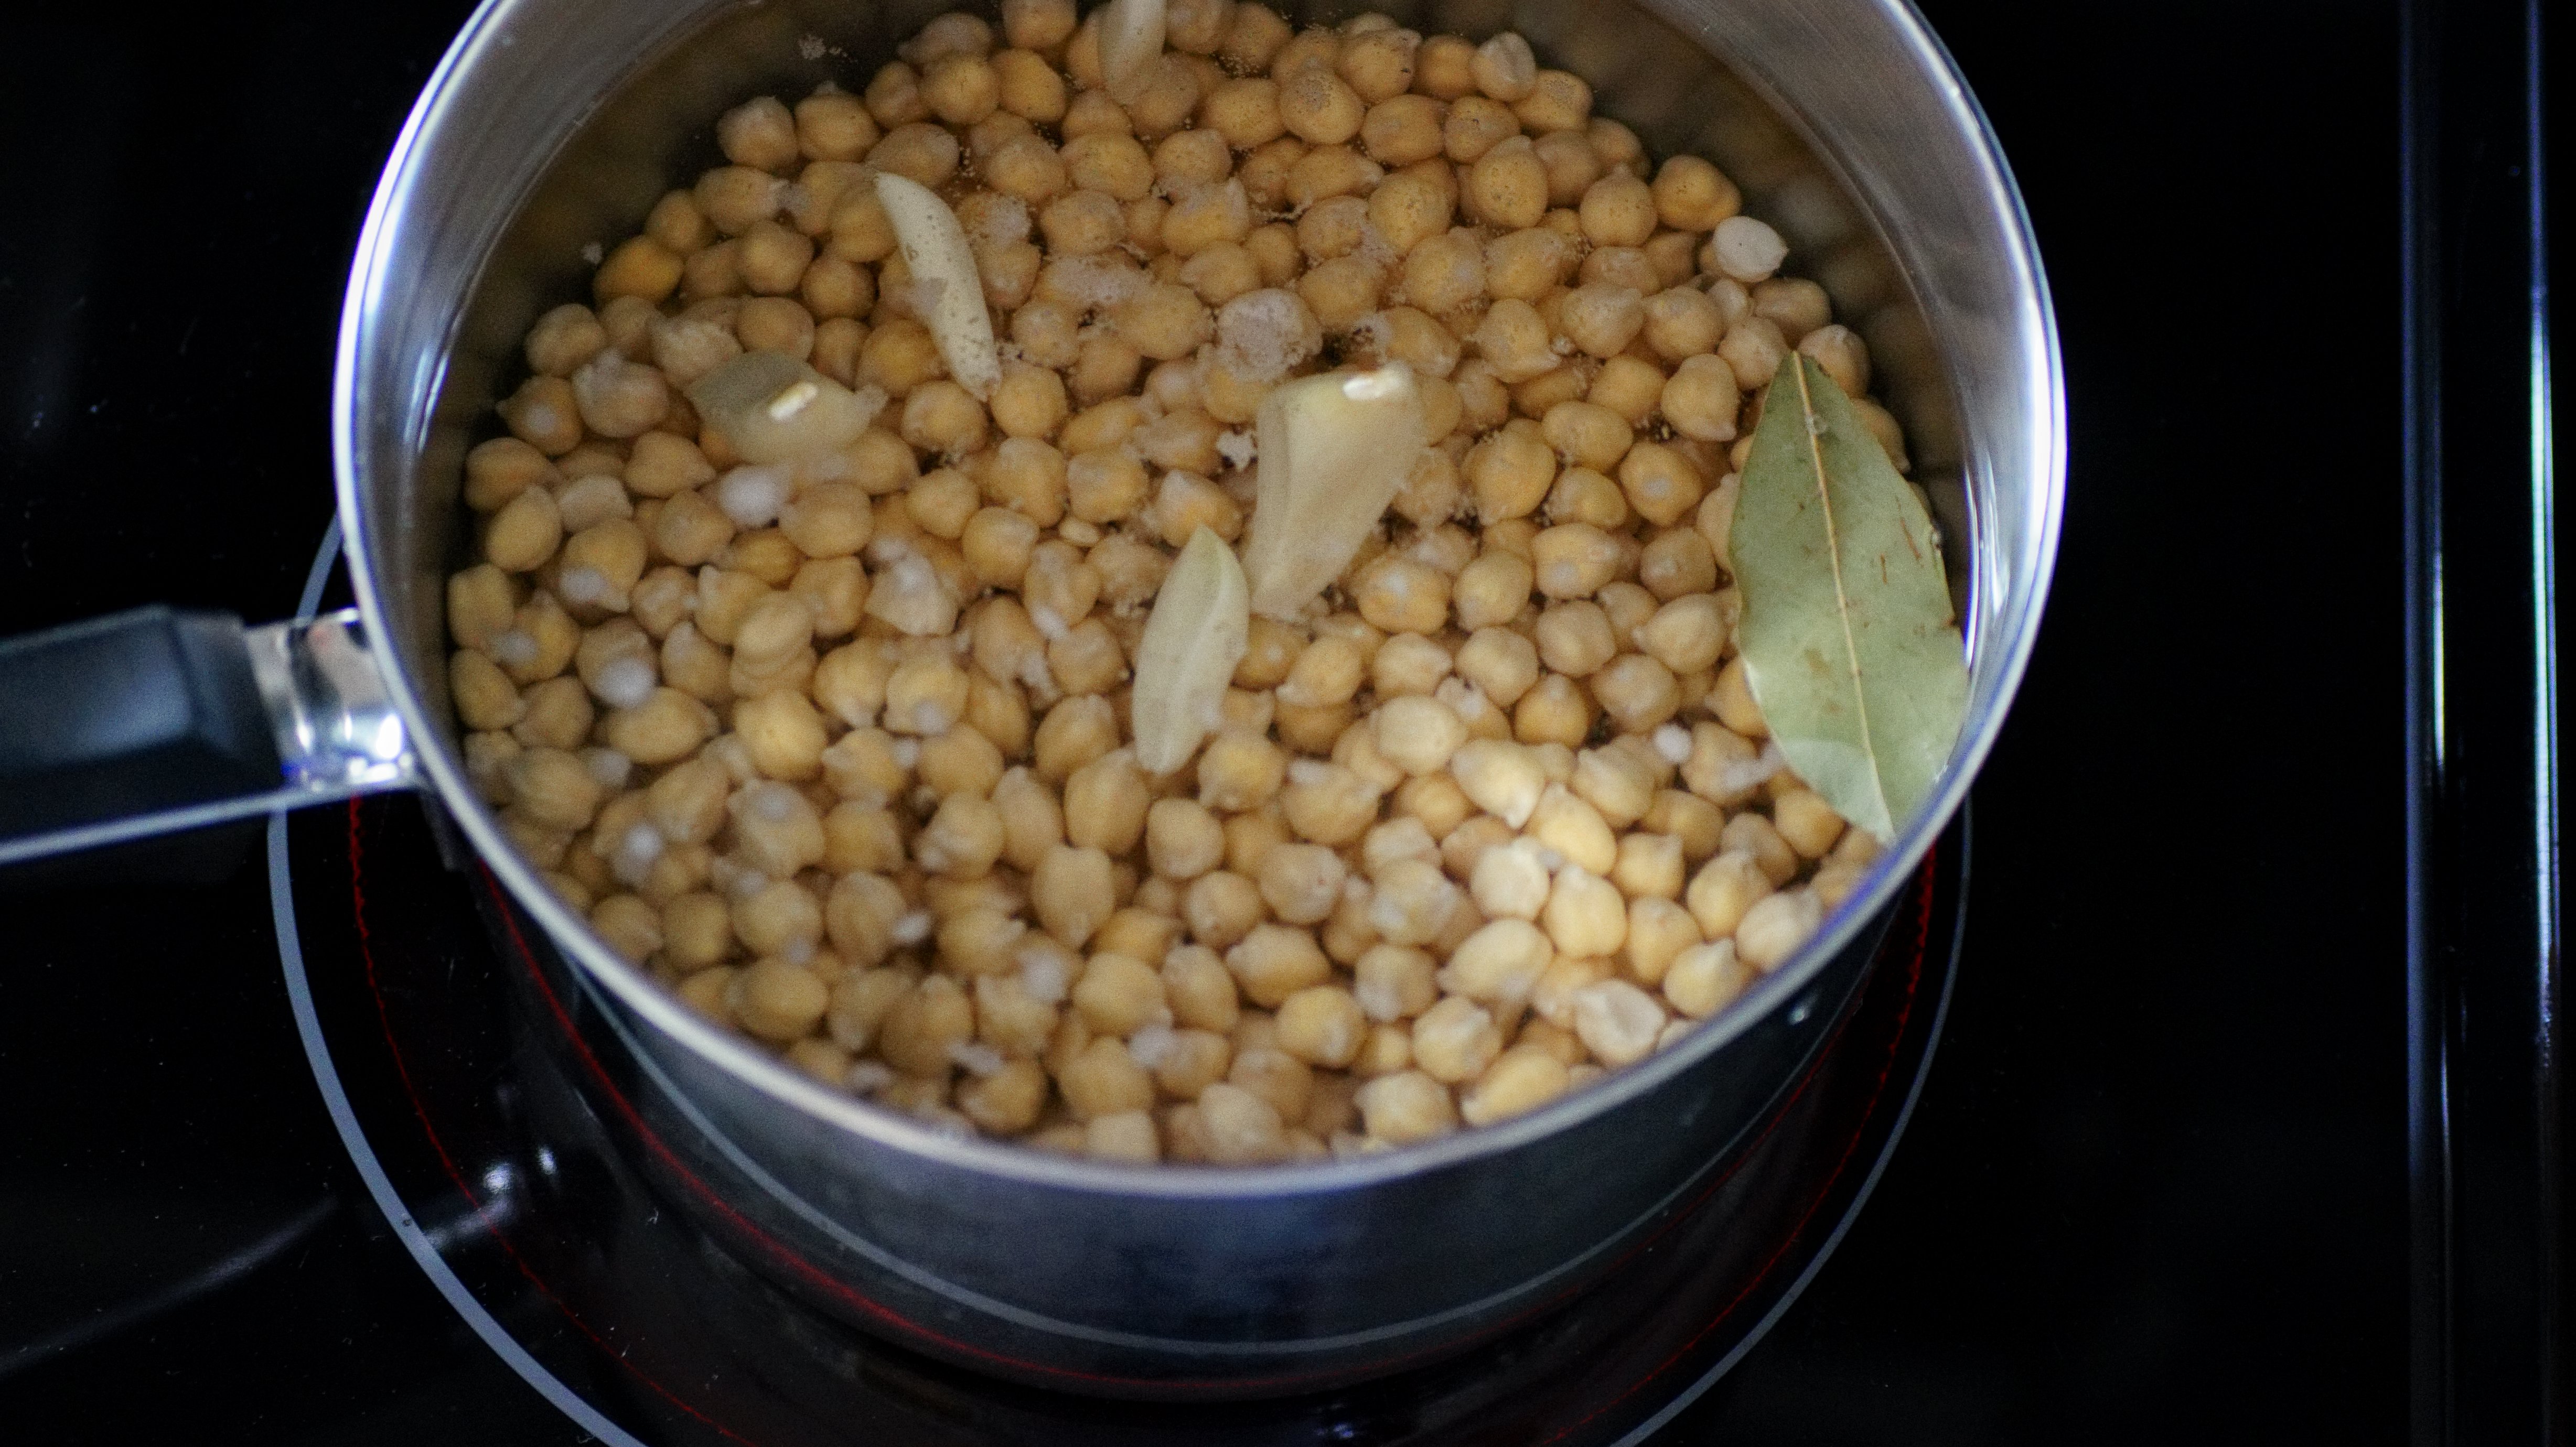 Boiling garbanzo beans